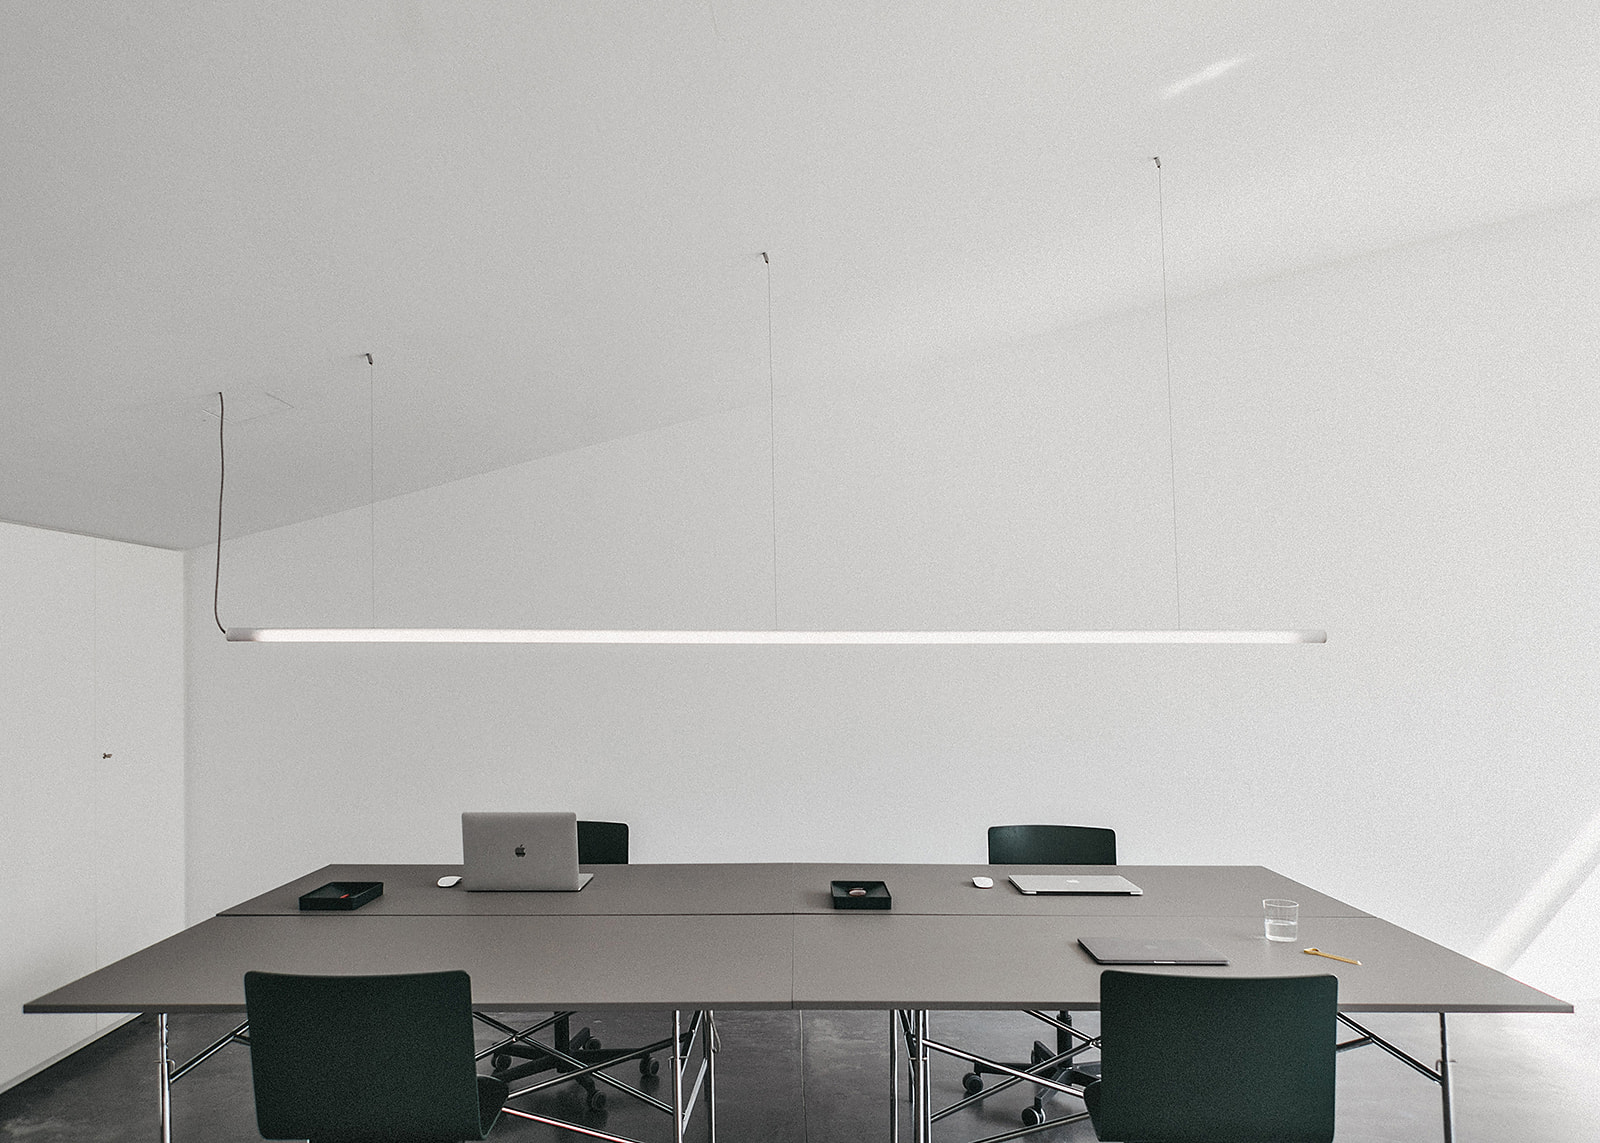 Gerdesmeyer Krohn
Office for Design Studio Schanz